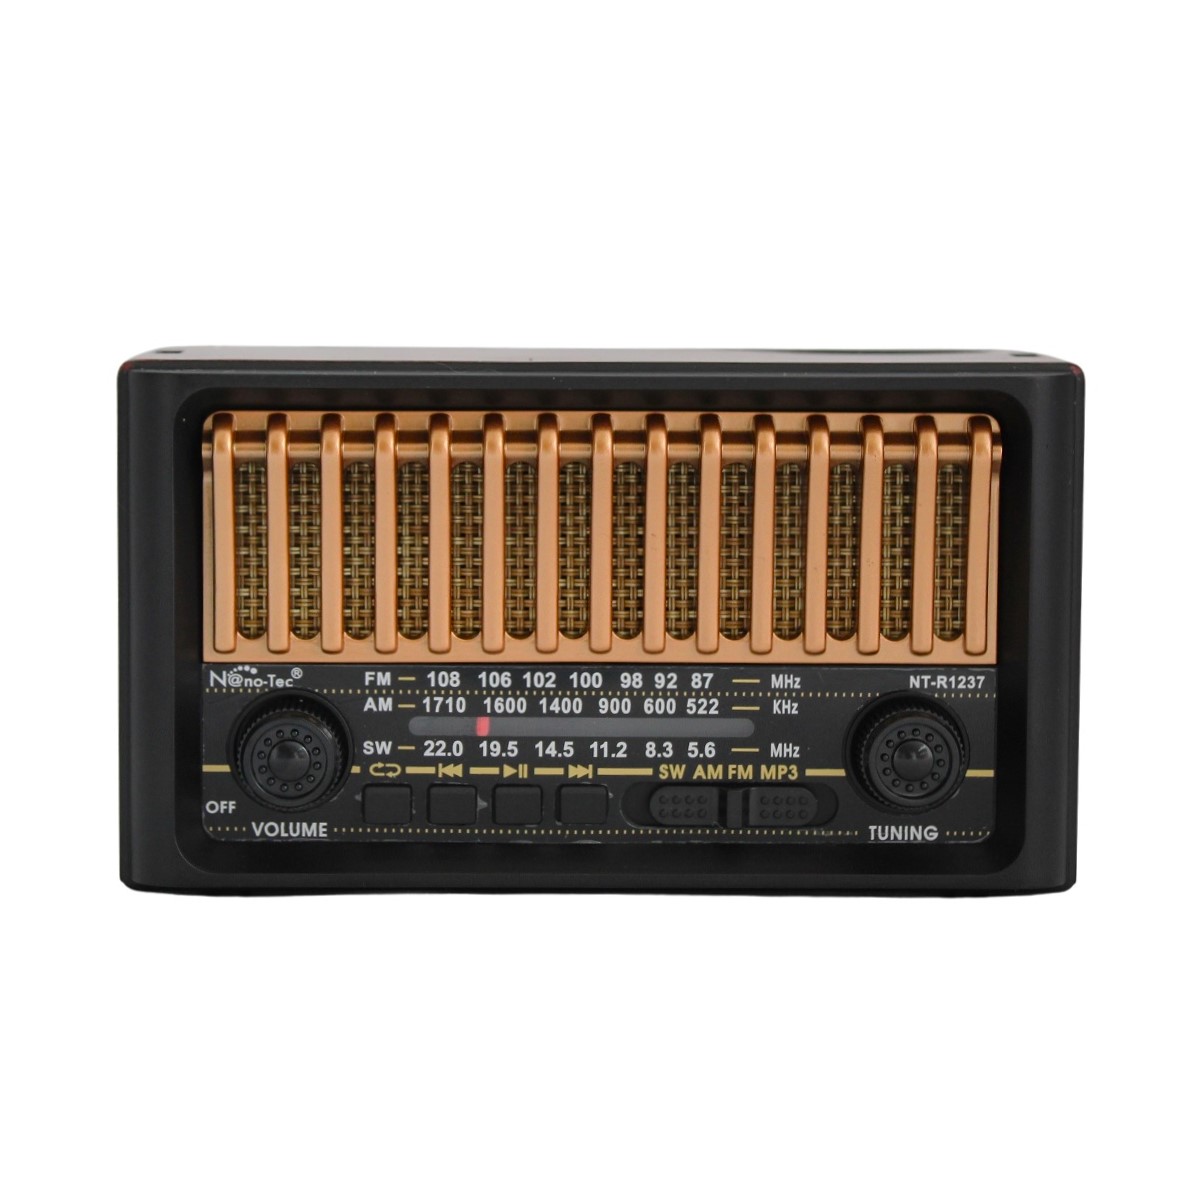 Radio Bolsillo AM/FM Carga USB Ranura TF - Luegopago